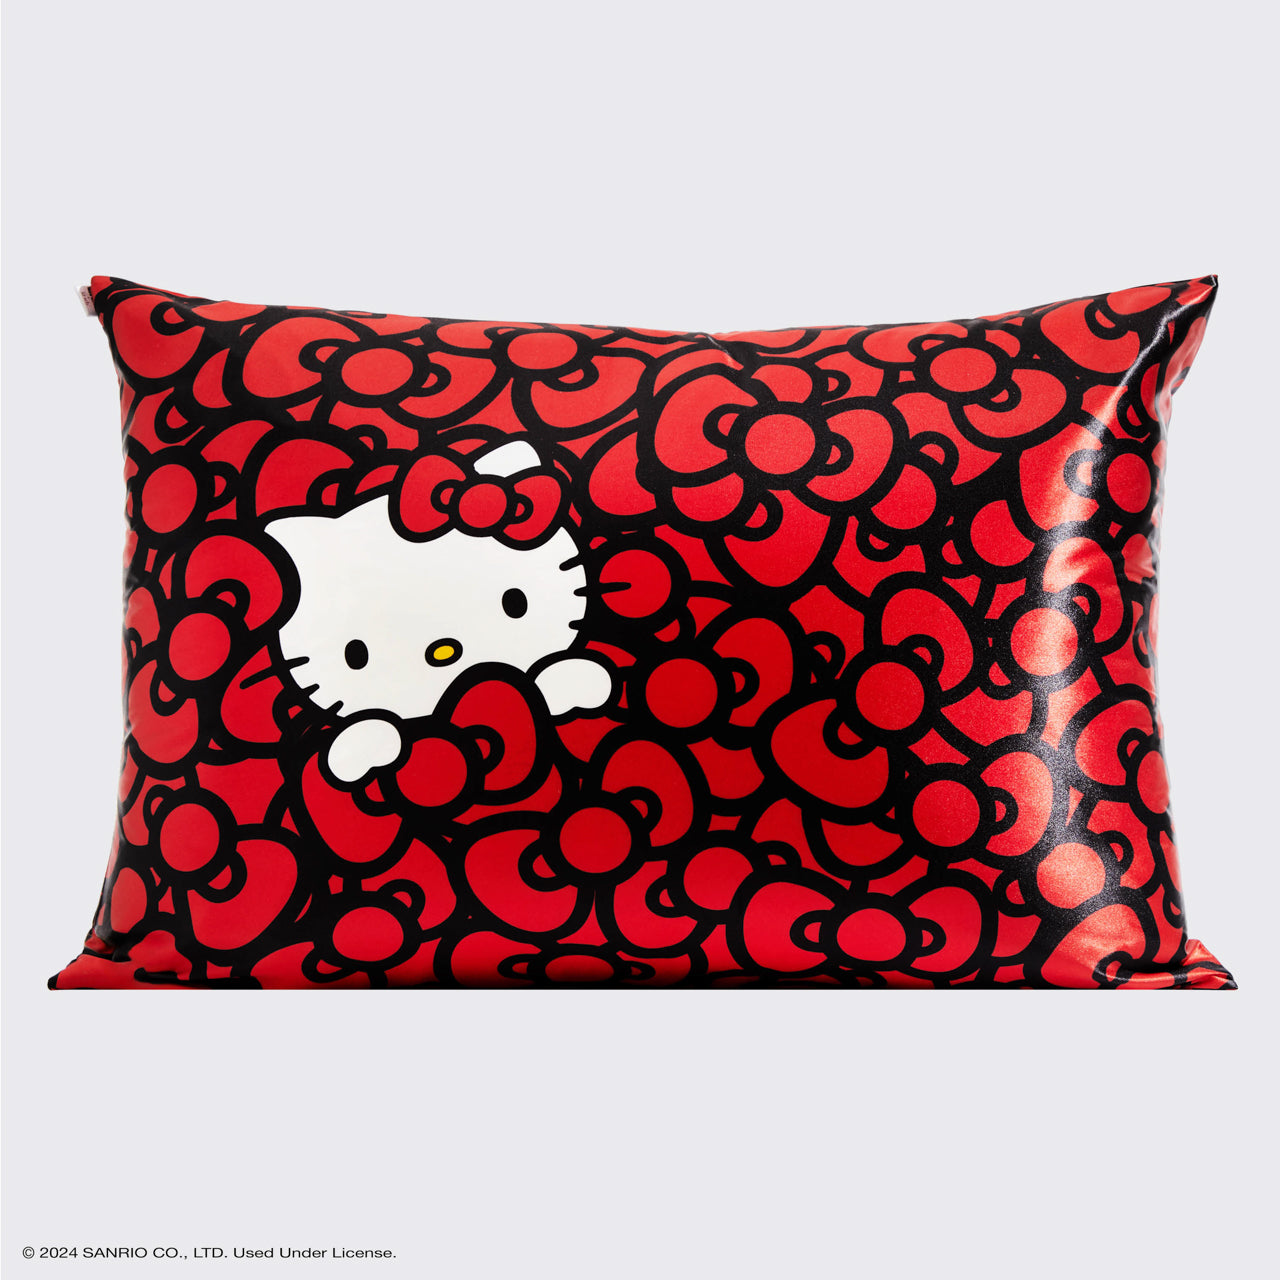 Hello Kitty x Kitsch Satin Pillowcase - Hello Kitty Bathes in a Sea of Bows